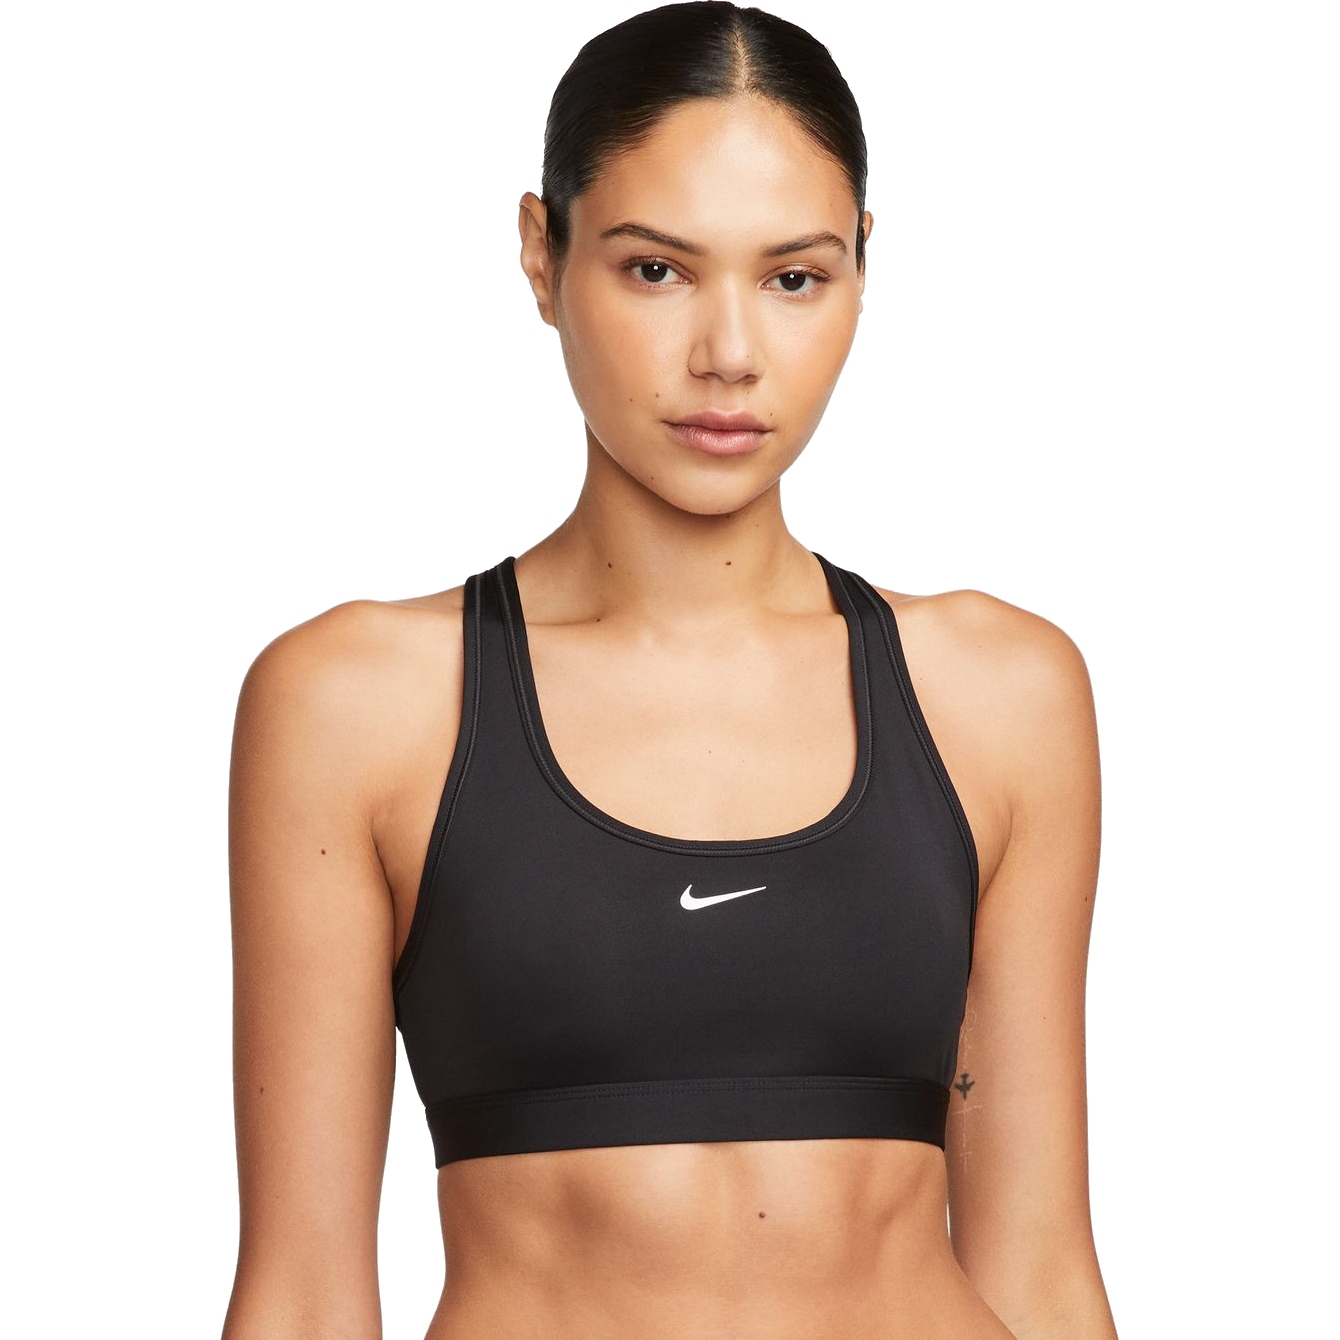 Produktbild von Nike Swoosh Light Support Sport-BH ohne Polster für Damen - schwarz/weiß DX6817-010